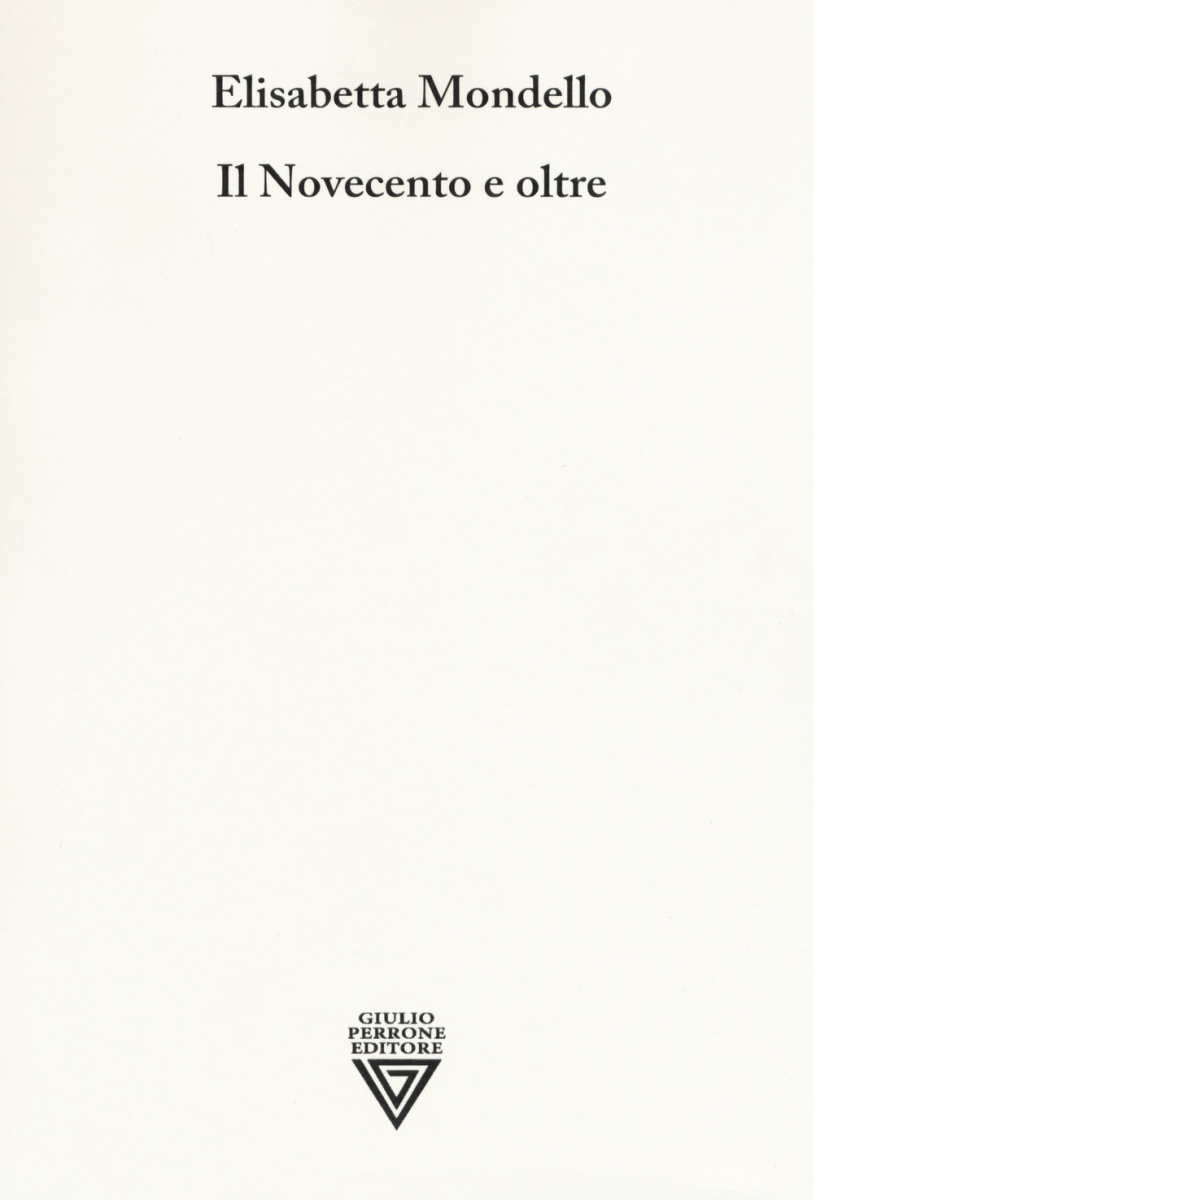 Il Novecento e oltre - Elisabetta Mondello - Perrone editore, 2019